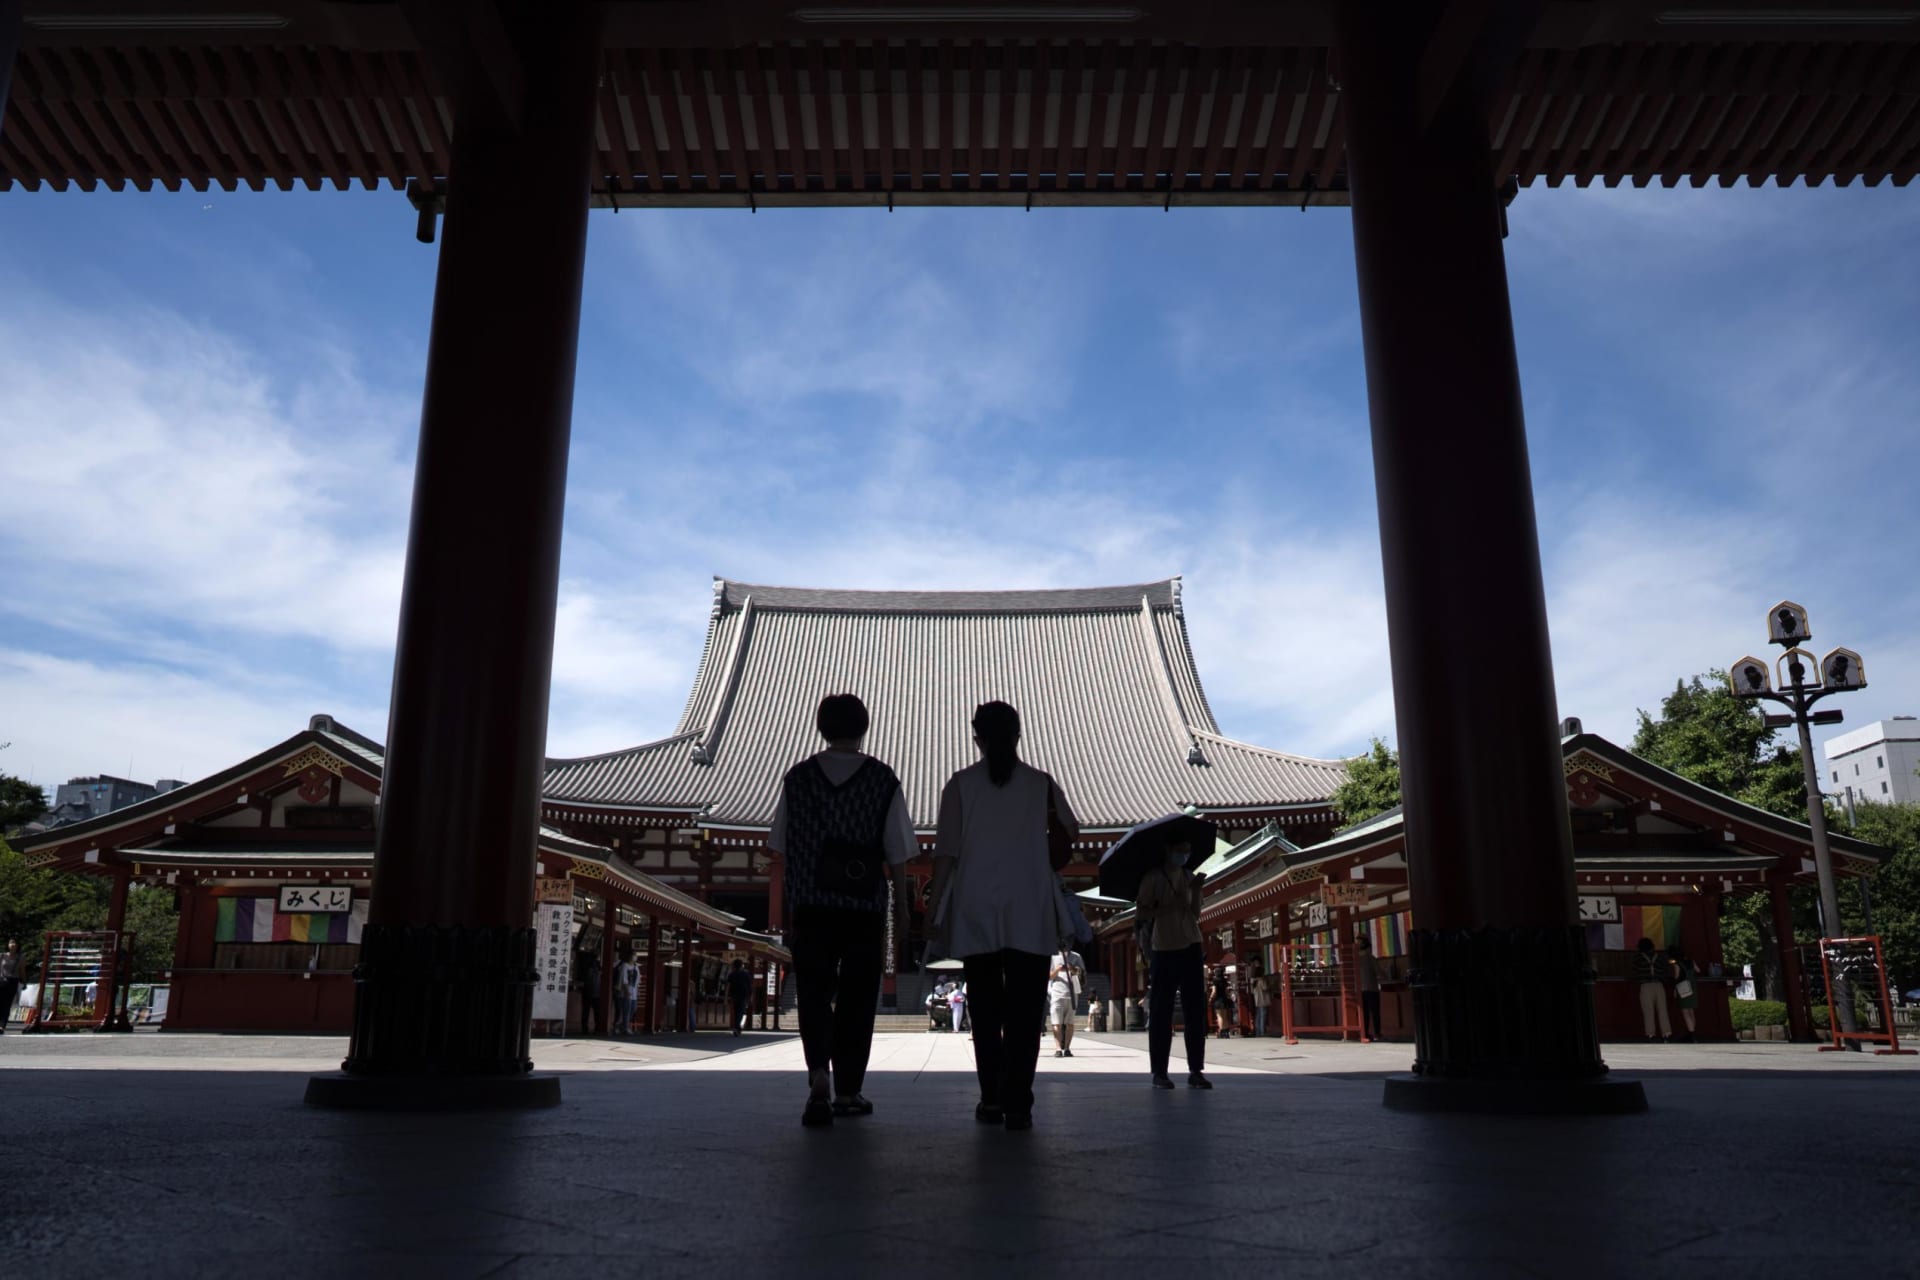 فتحت اليابان أبوابها للمسافرين.. ولكن ما سبب عدم عودة السياح حتّى الآن؟